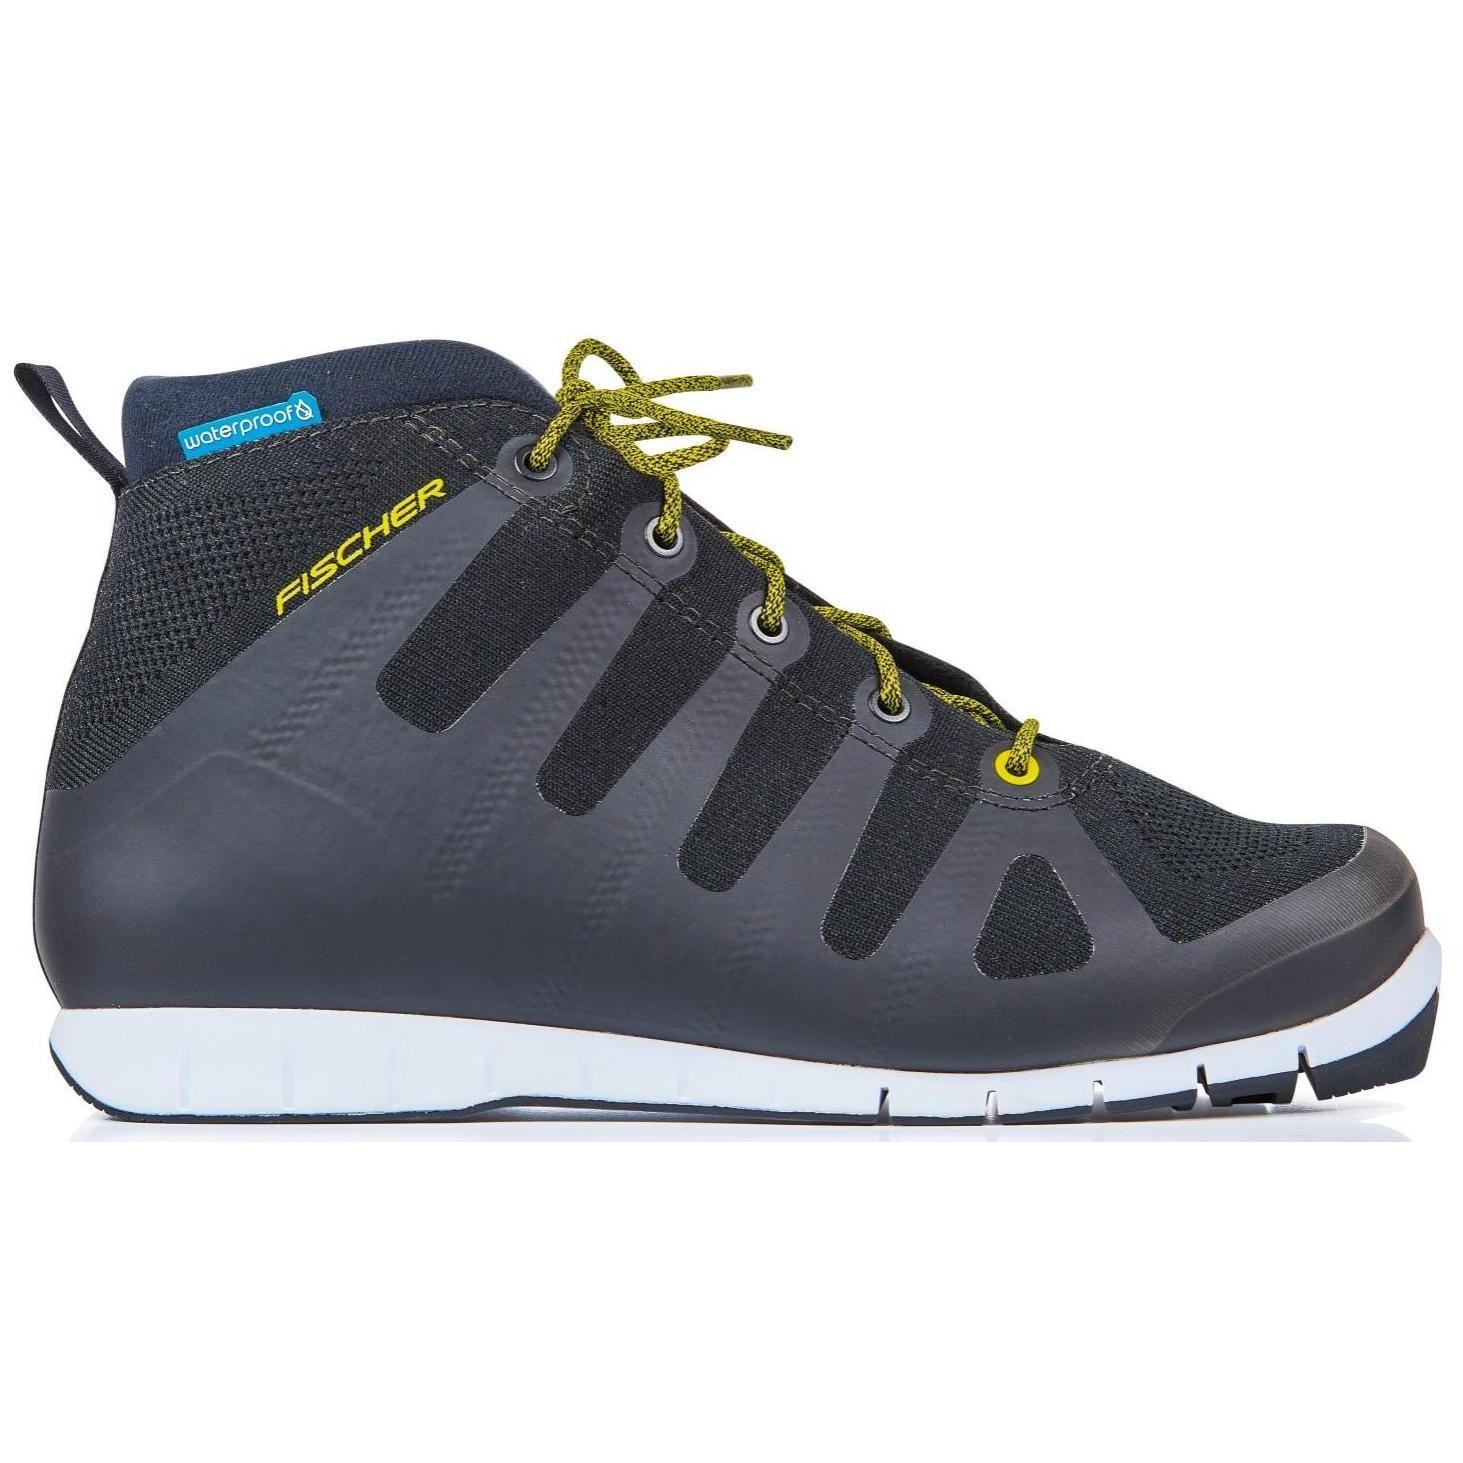 Ботинки для беговых лыж Fischer Urban Sport 2020, black/yellow, 45